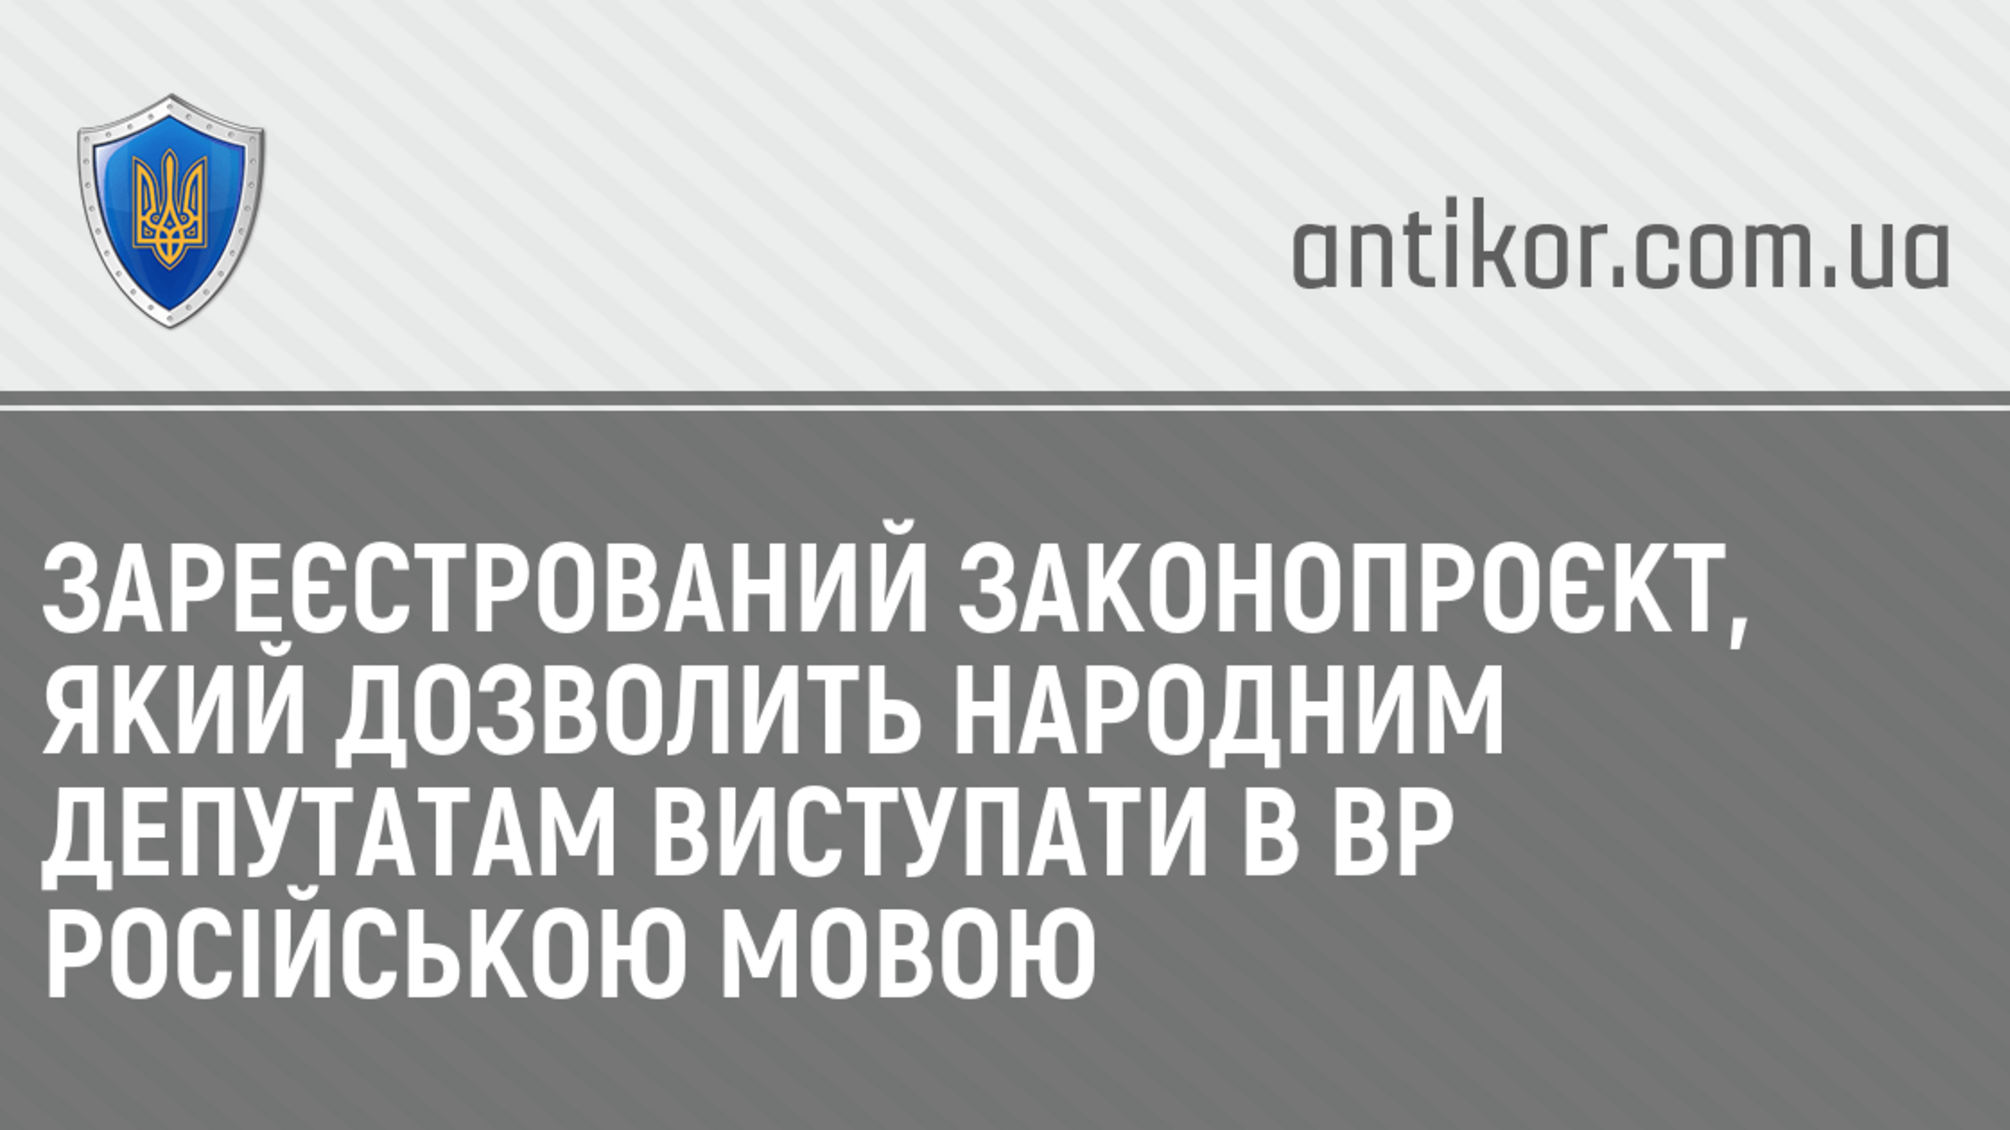 Зареєстрований законопроєкт, який дозволить народним депутатам виступати в ВР російською мовою